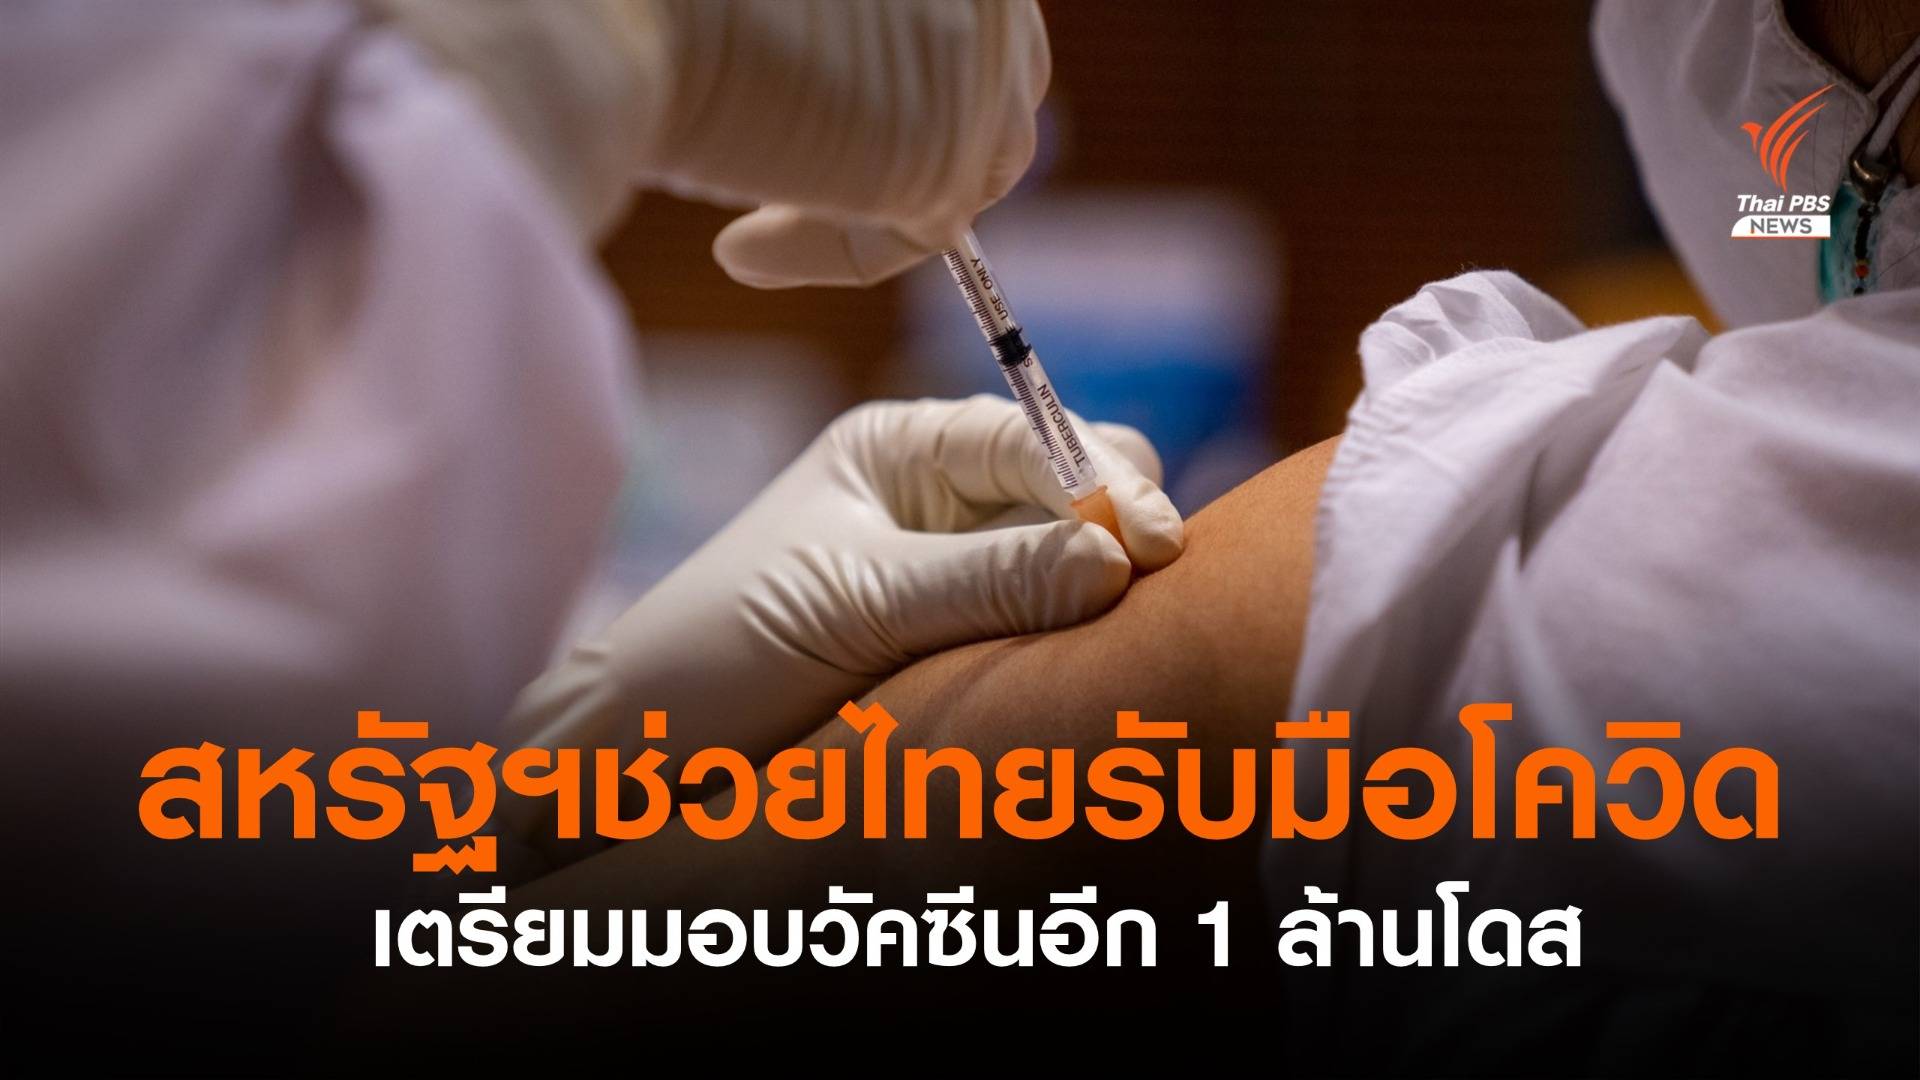 สหรัฐฯเตรียมมอบวัคซีนให้ไทยอีก 1 ล้านโดส ช่วยรับมือโควิด